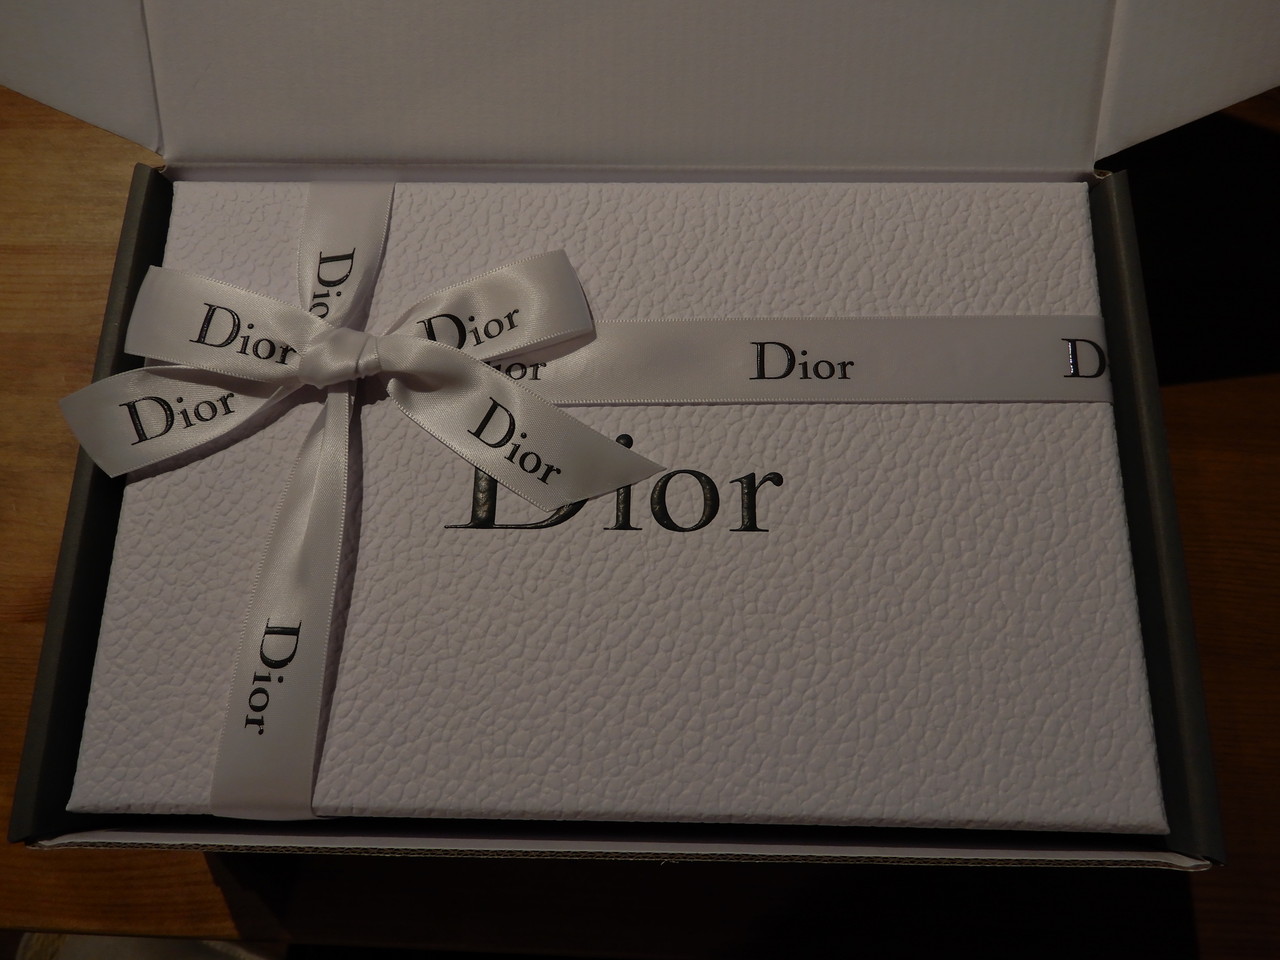 Diorの通販を利用したら楽しかった話 : 僕と彼氏の旅行記